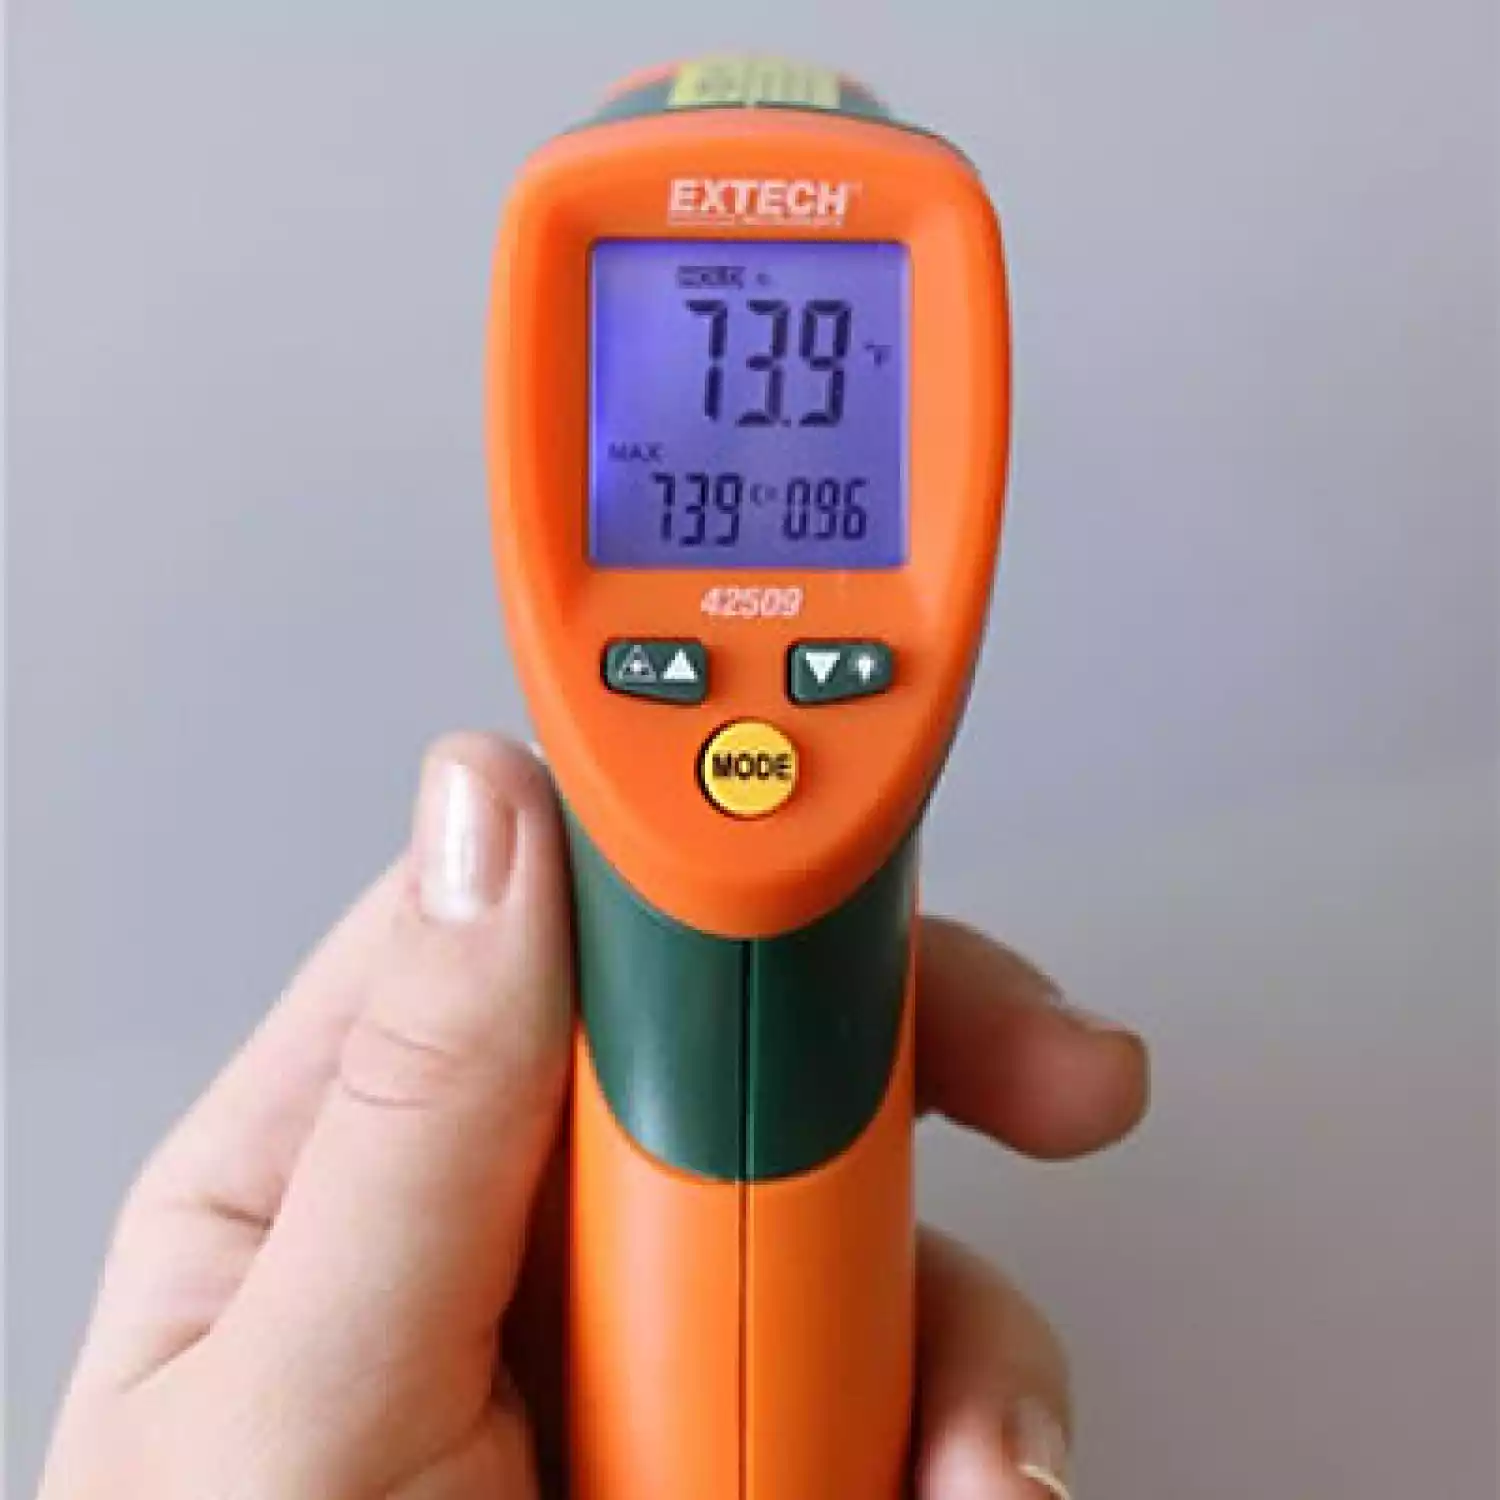 Пирометр Extech 42509 инфракрасный термометр с двойным лазером - 5